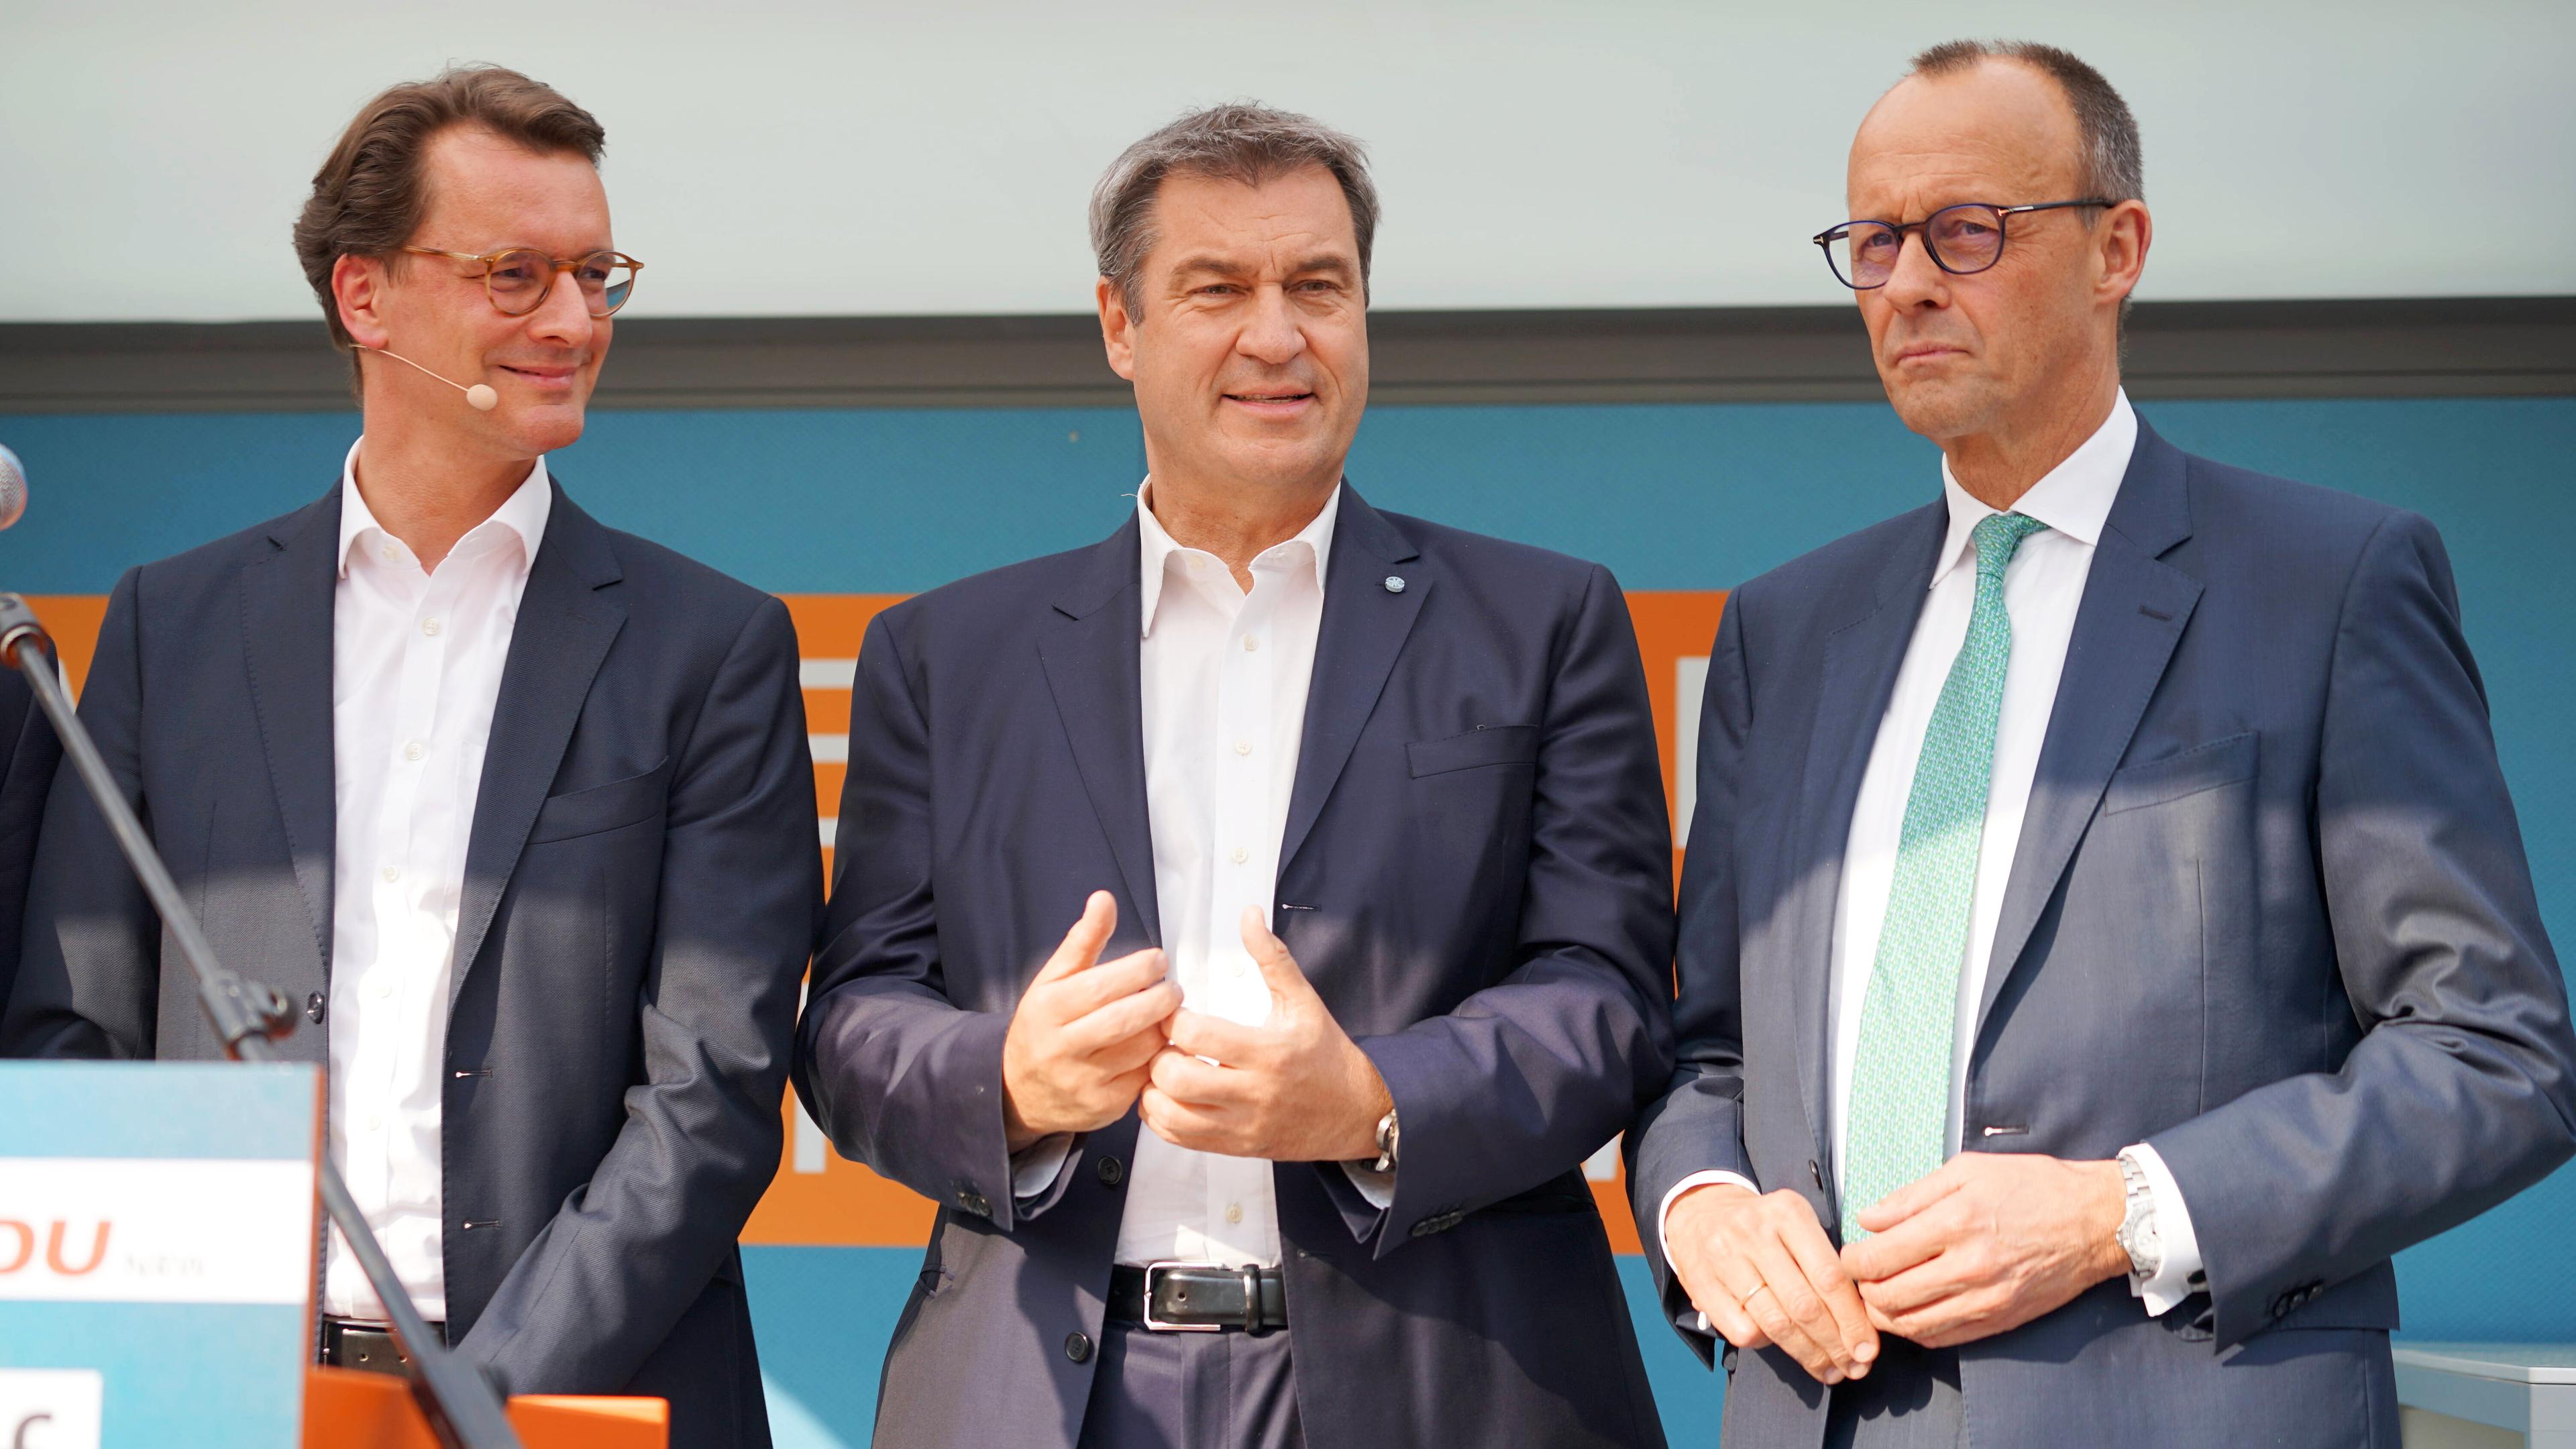 V.l.n.r: Hendrik Wüst, Markus Söder und Friedrich Merz, aufgenommen am 02.05.2022